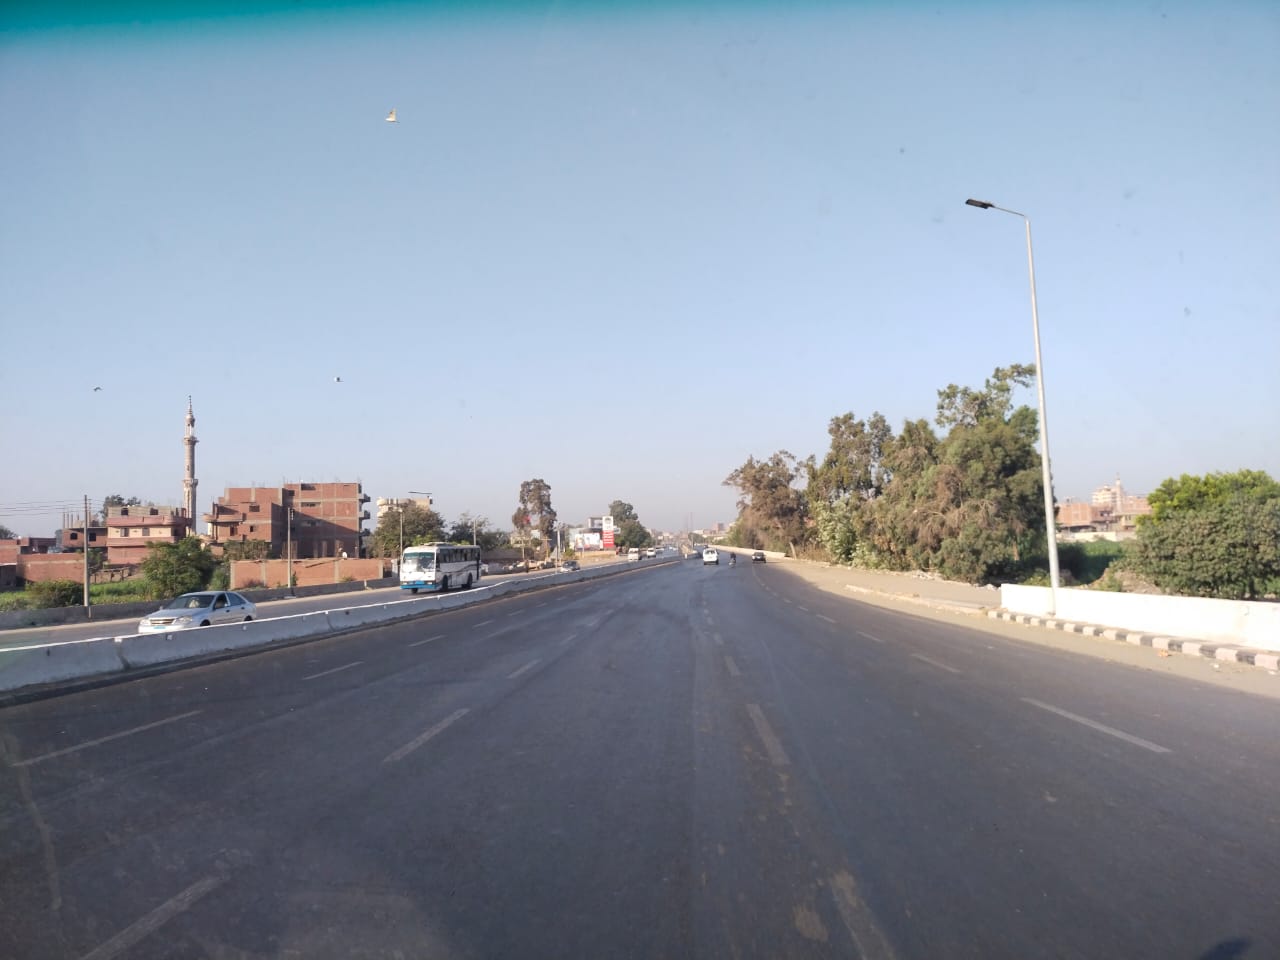  سيولة مرورية بطريق القاهرة الإسكندرية الزراعى (6)